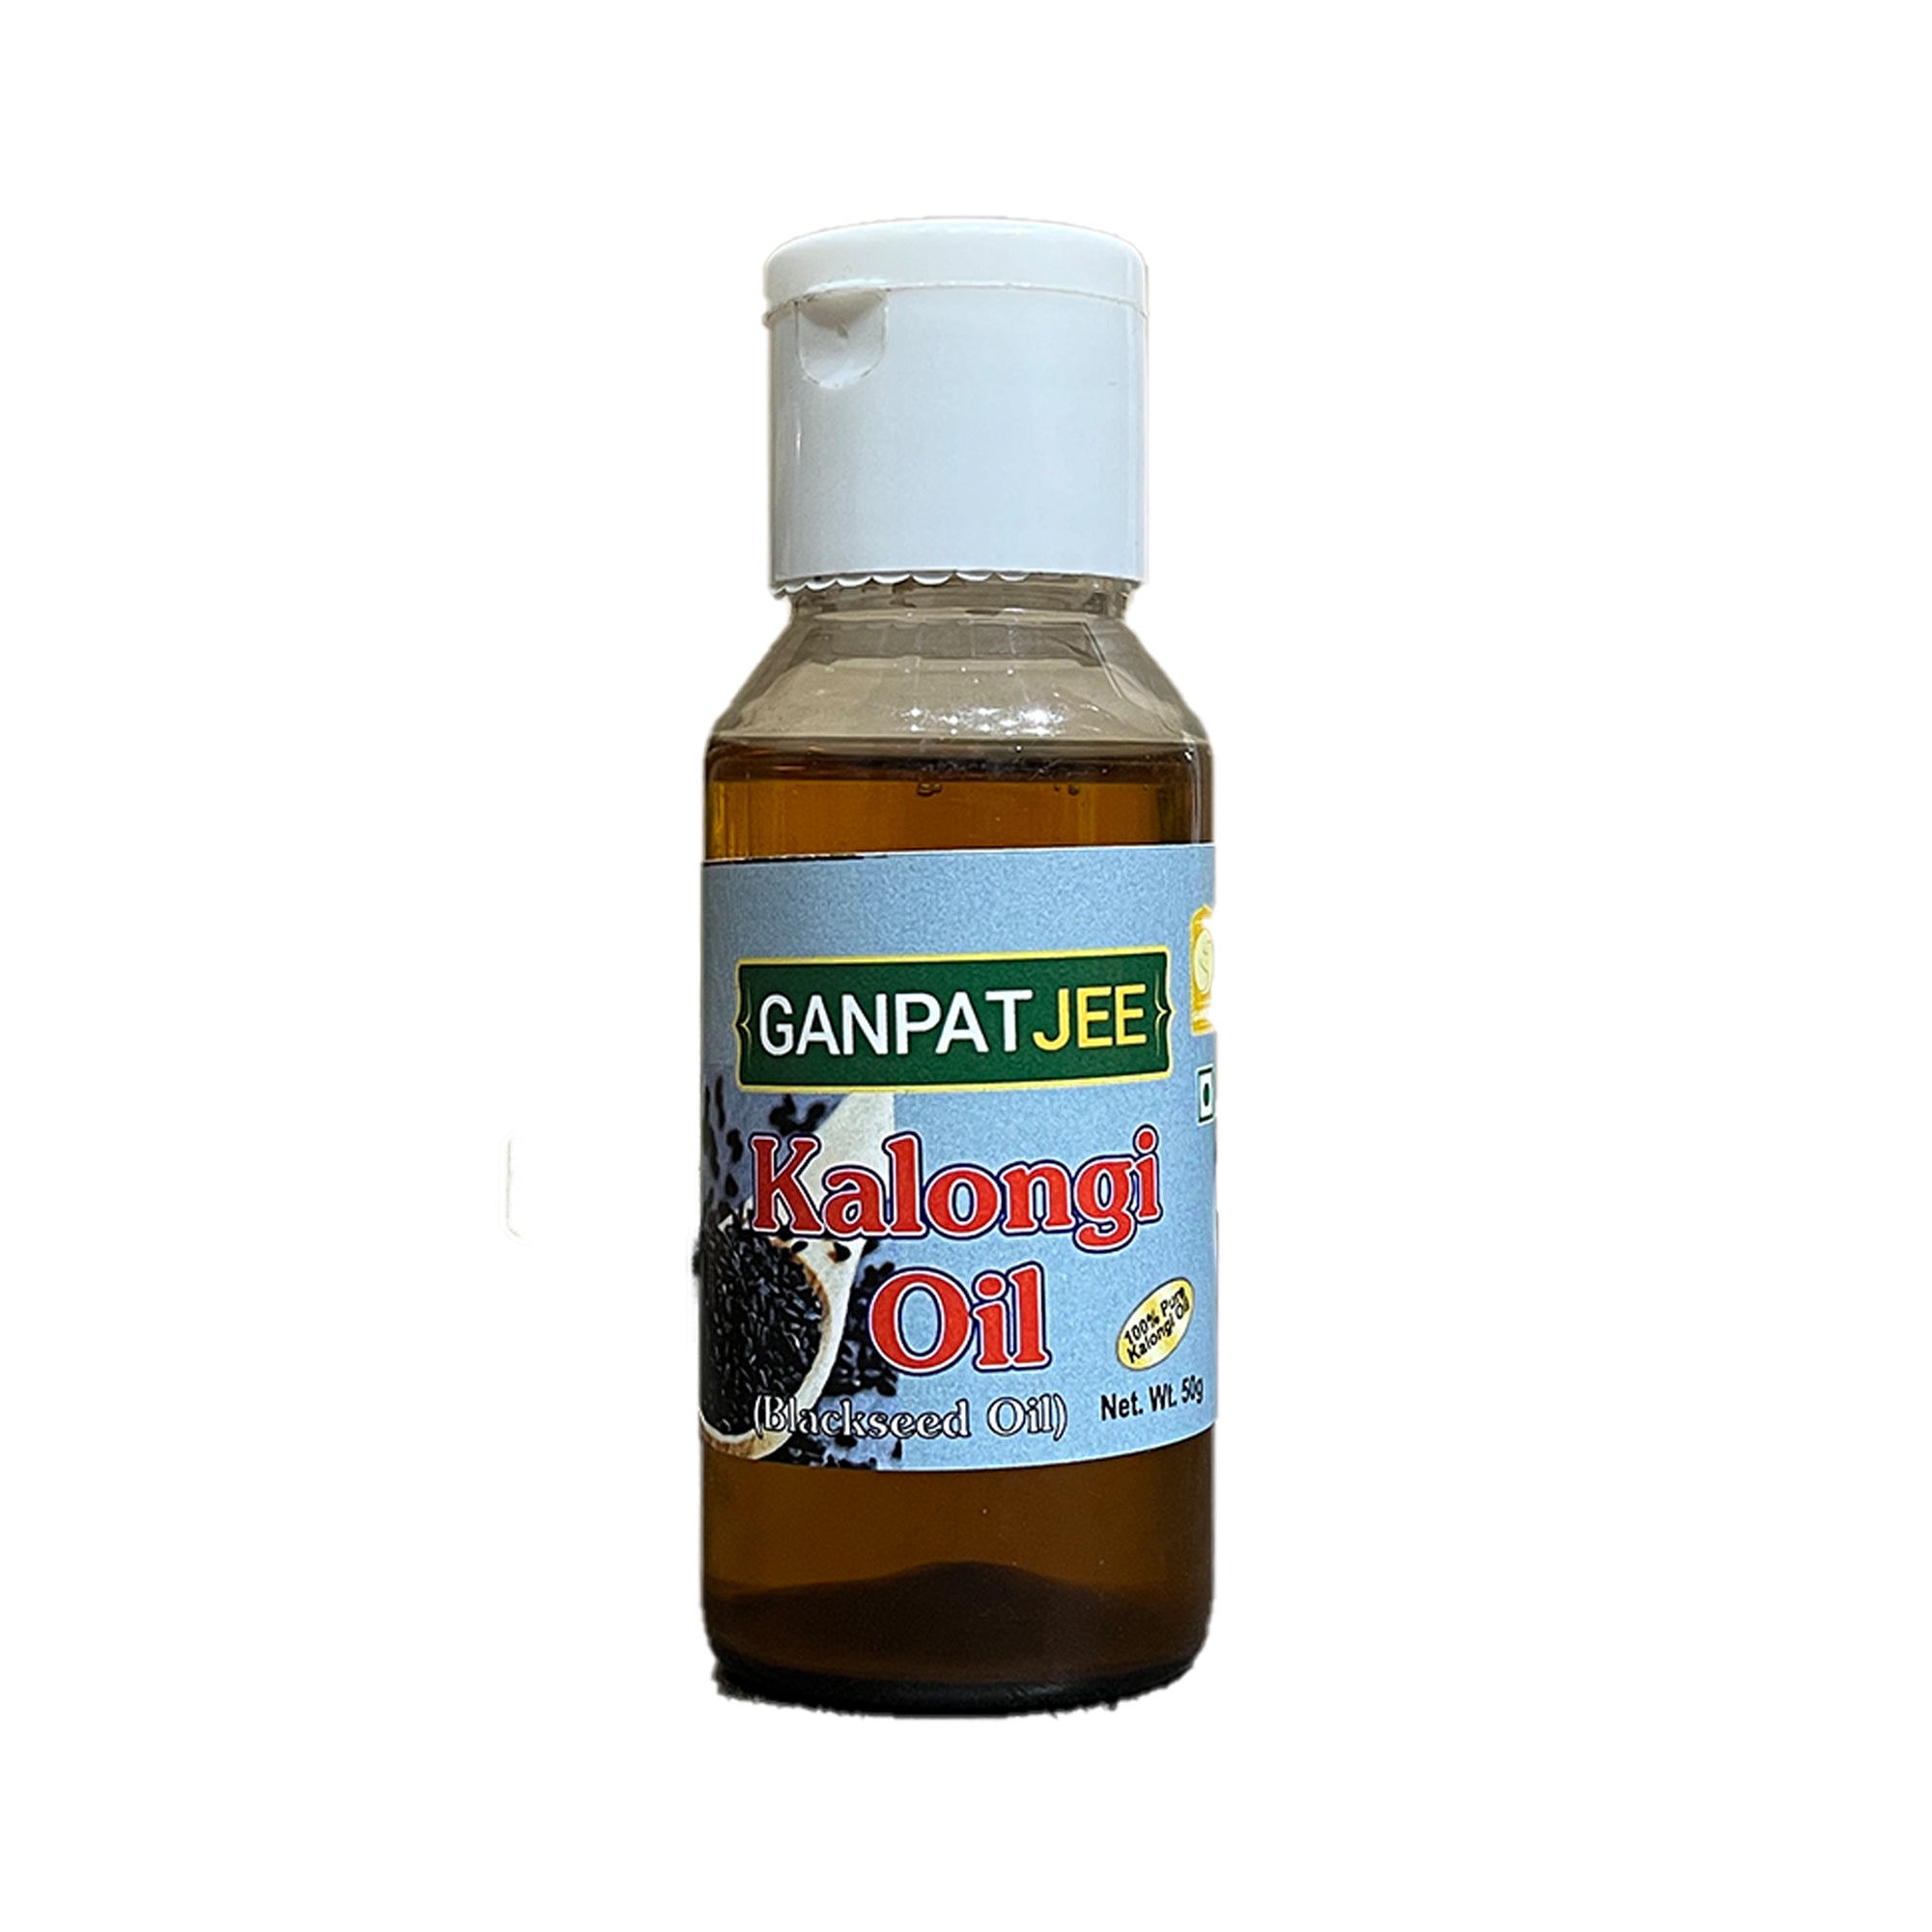 Ganpatjee Kalonji Oil, 50g | Blackseed Onion Oil